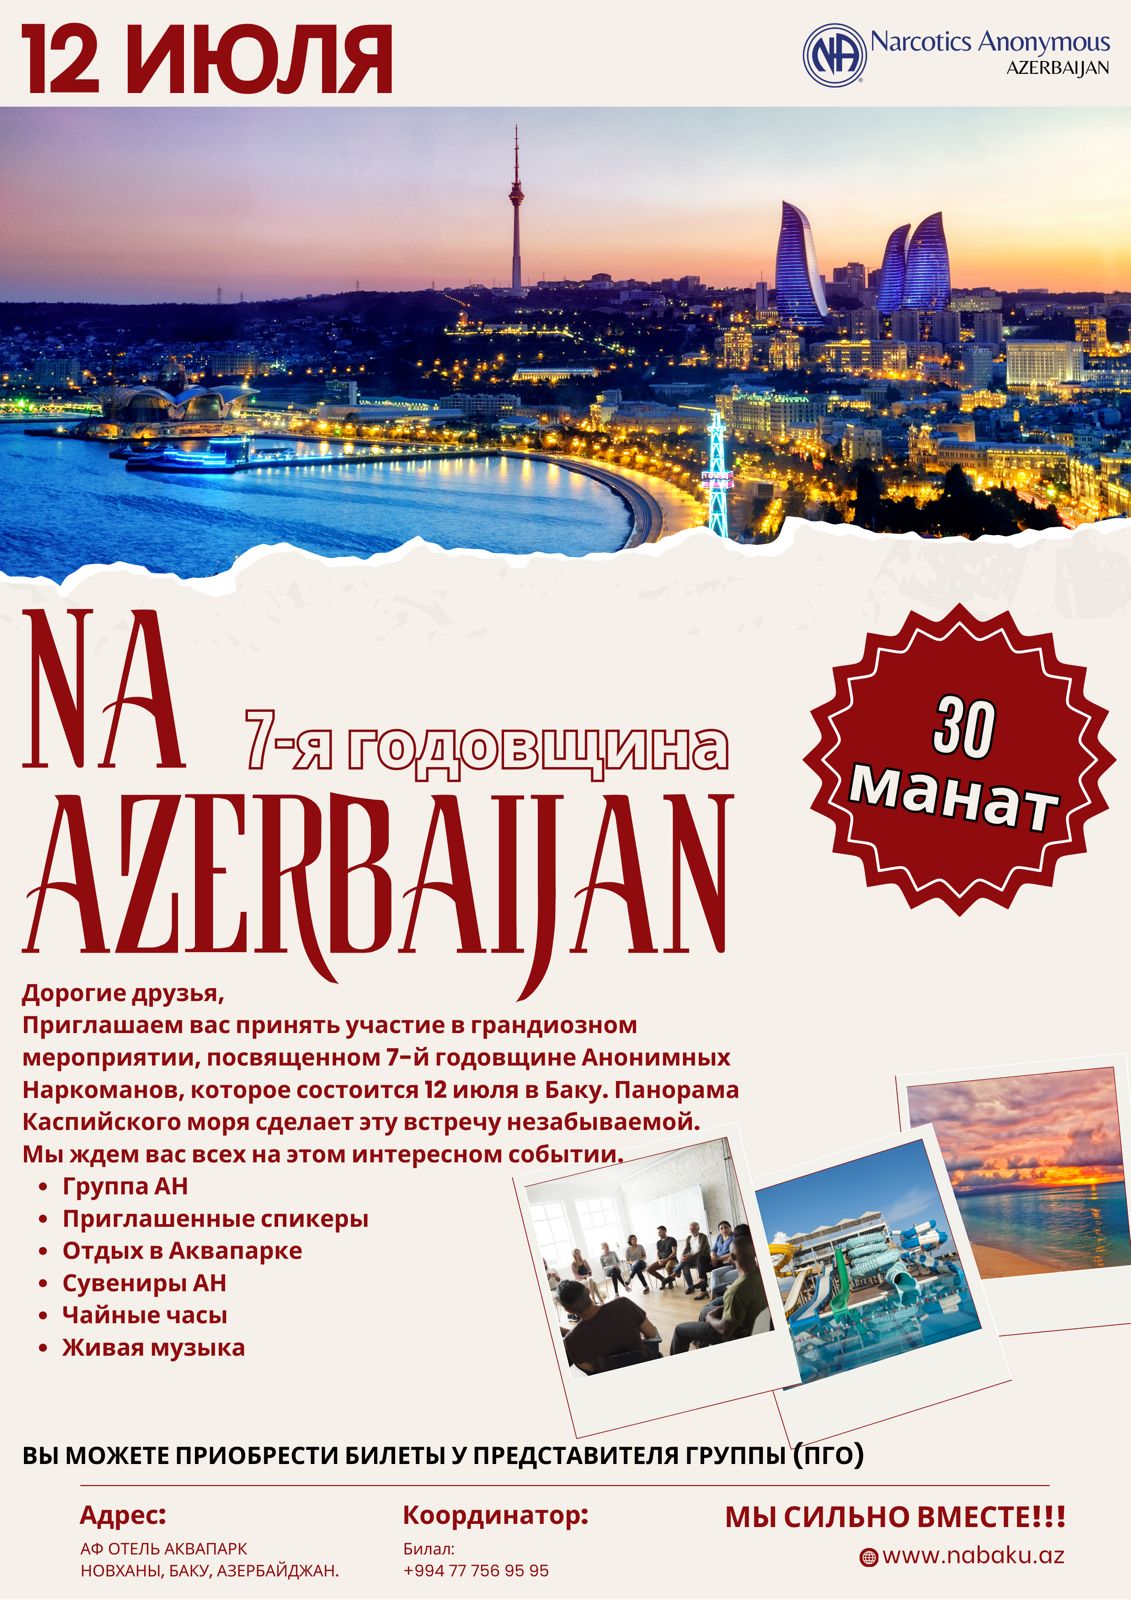 🌐  7-я годовщина АН Азербайджана